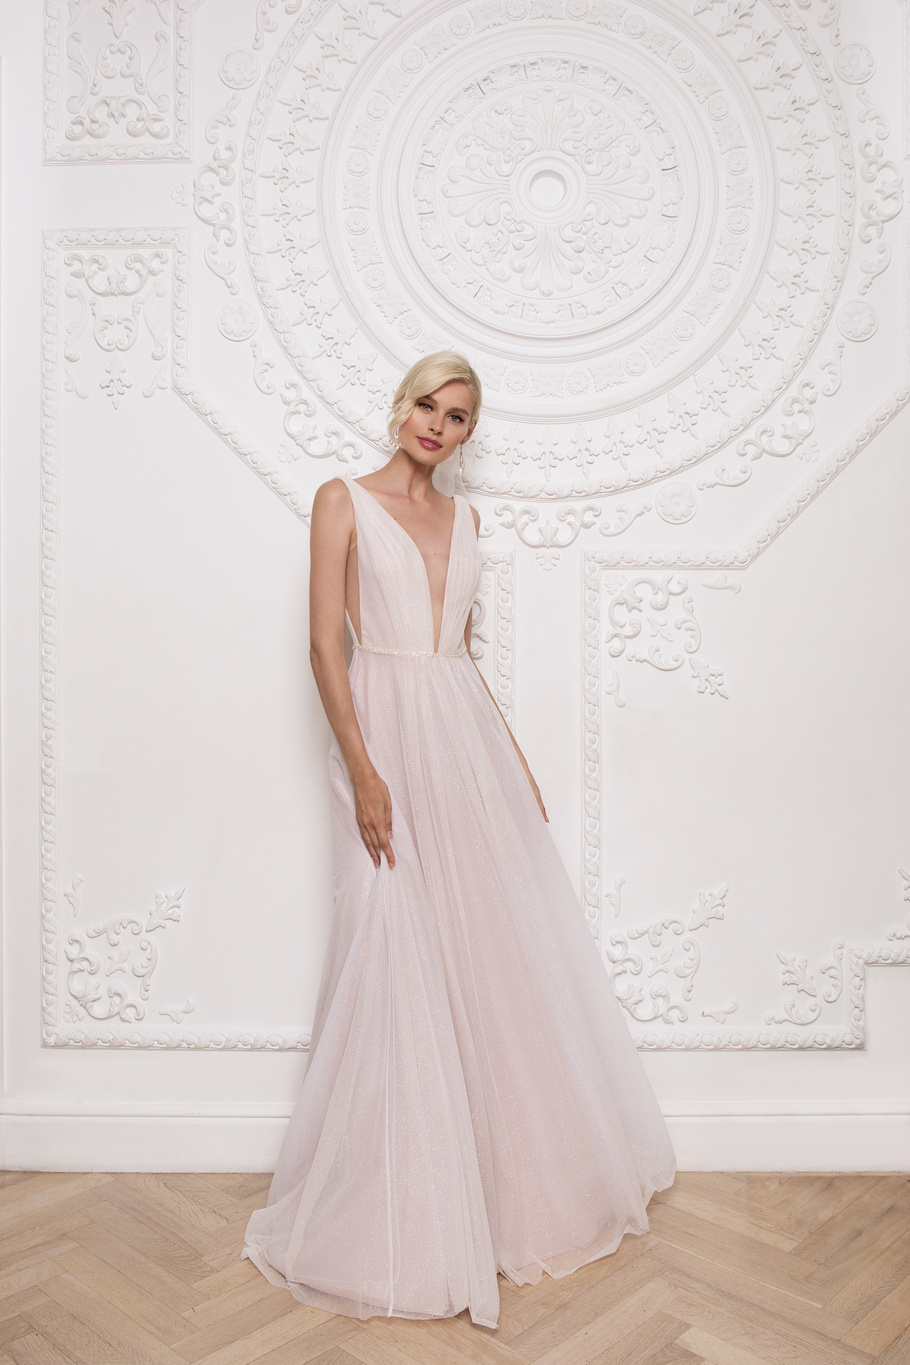 Купить свадебное платье «Джефина» Мэрри Марк из коллекции 2020 года в Санкт-Петербурге